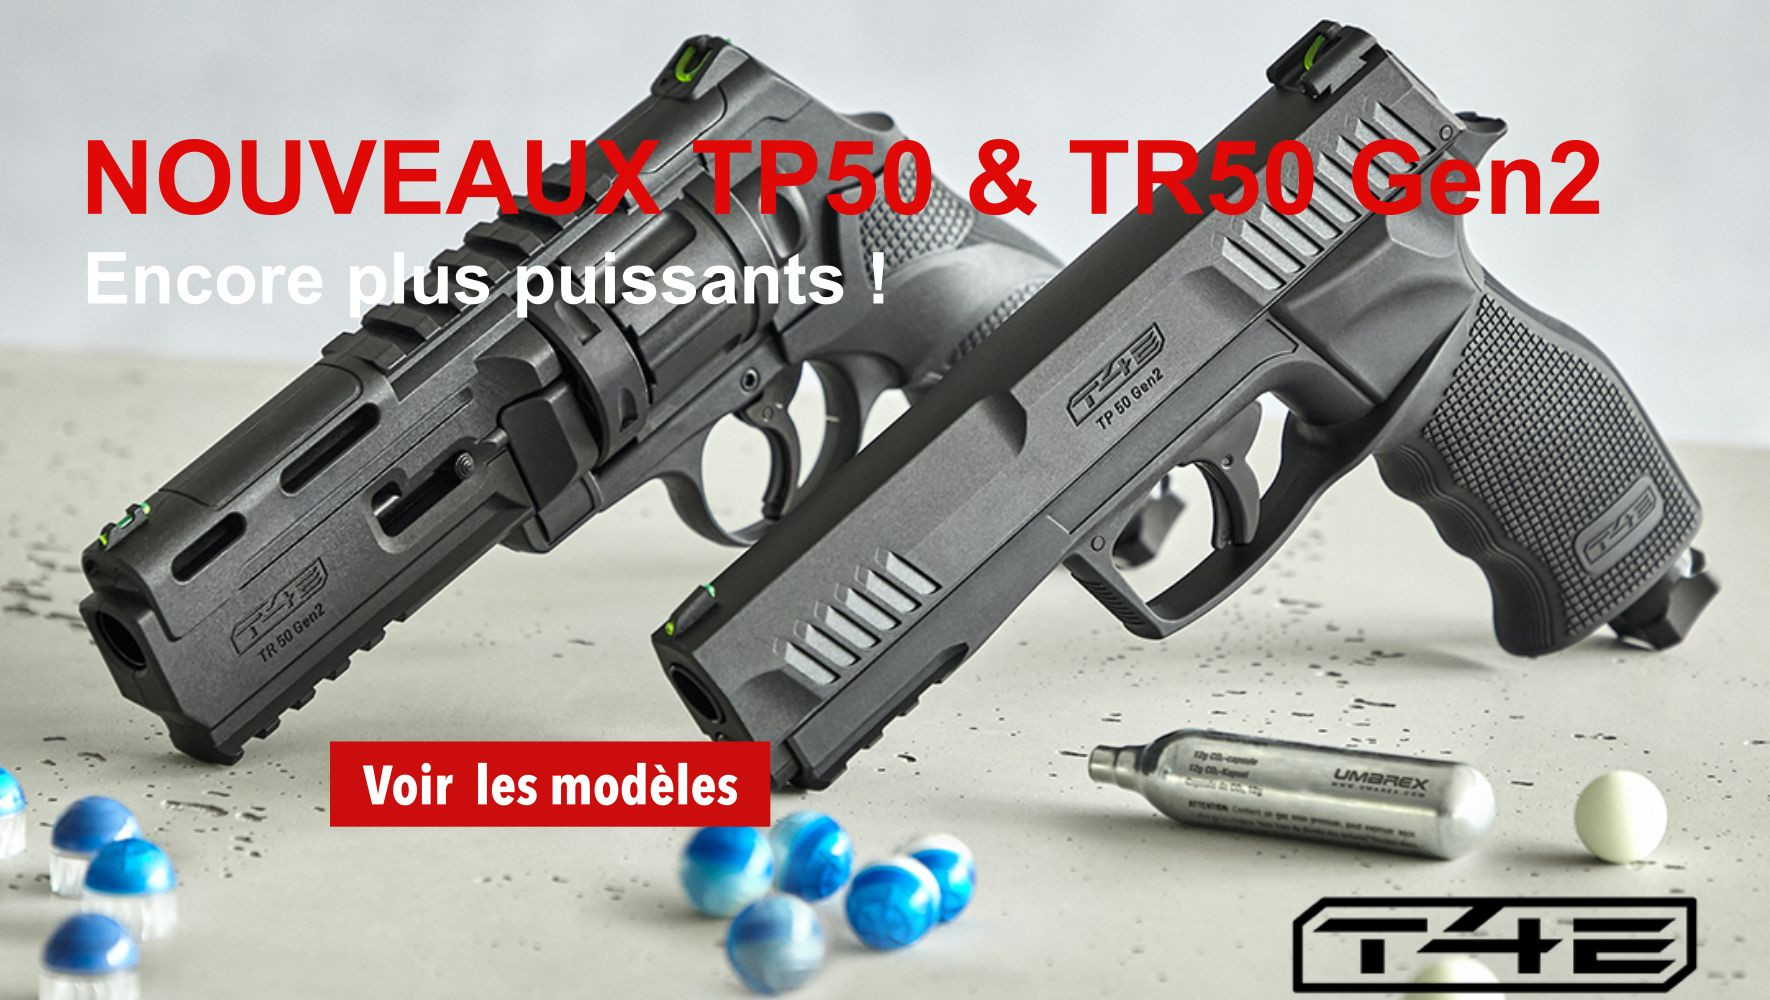 Nouveaux pistolets de défense TP50 et TR50 Gen2